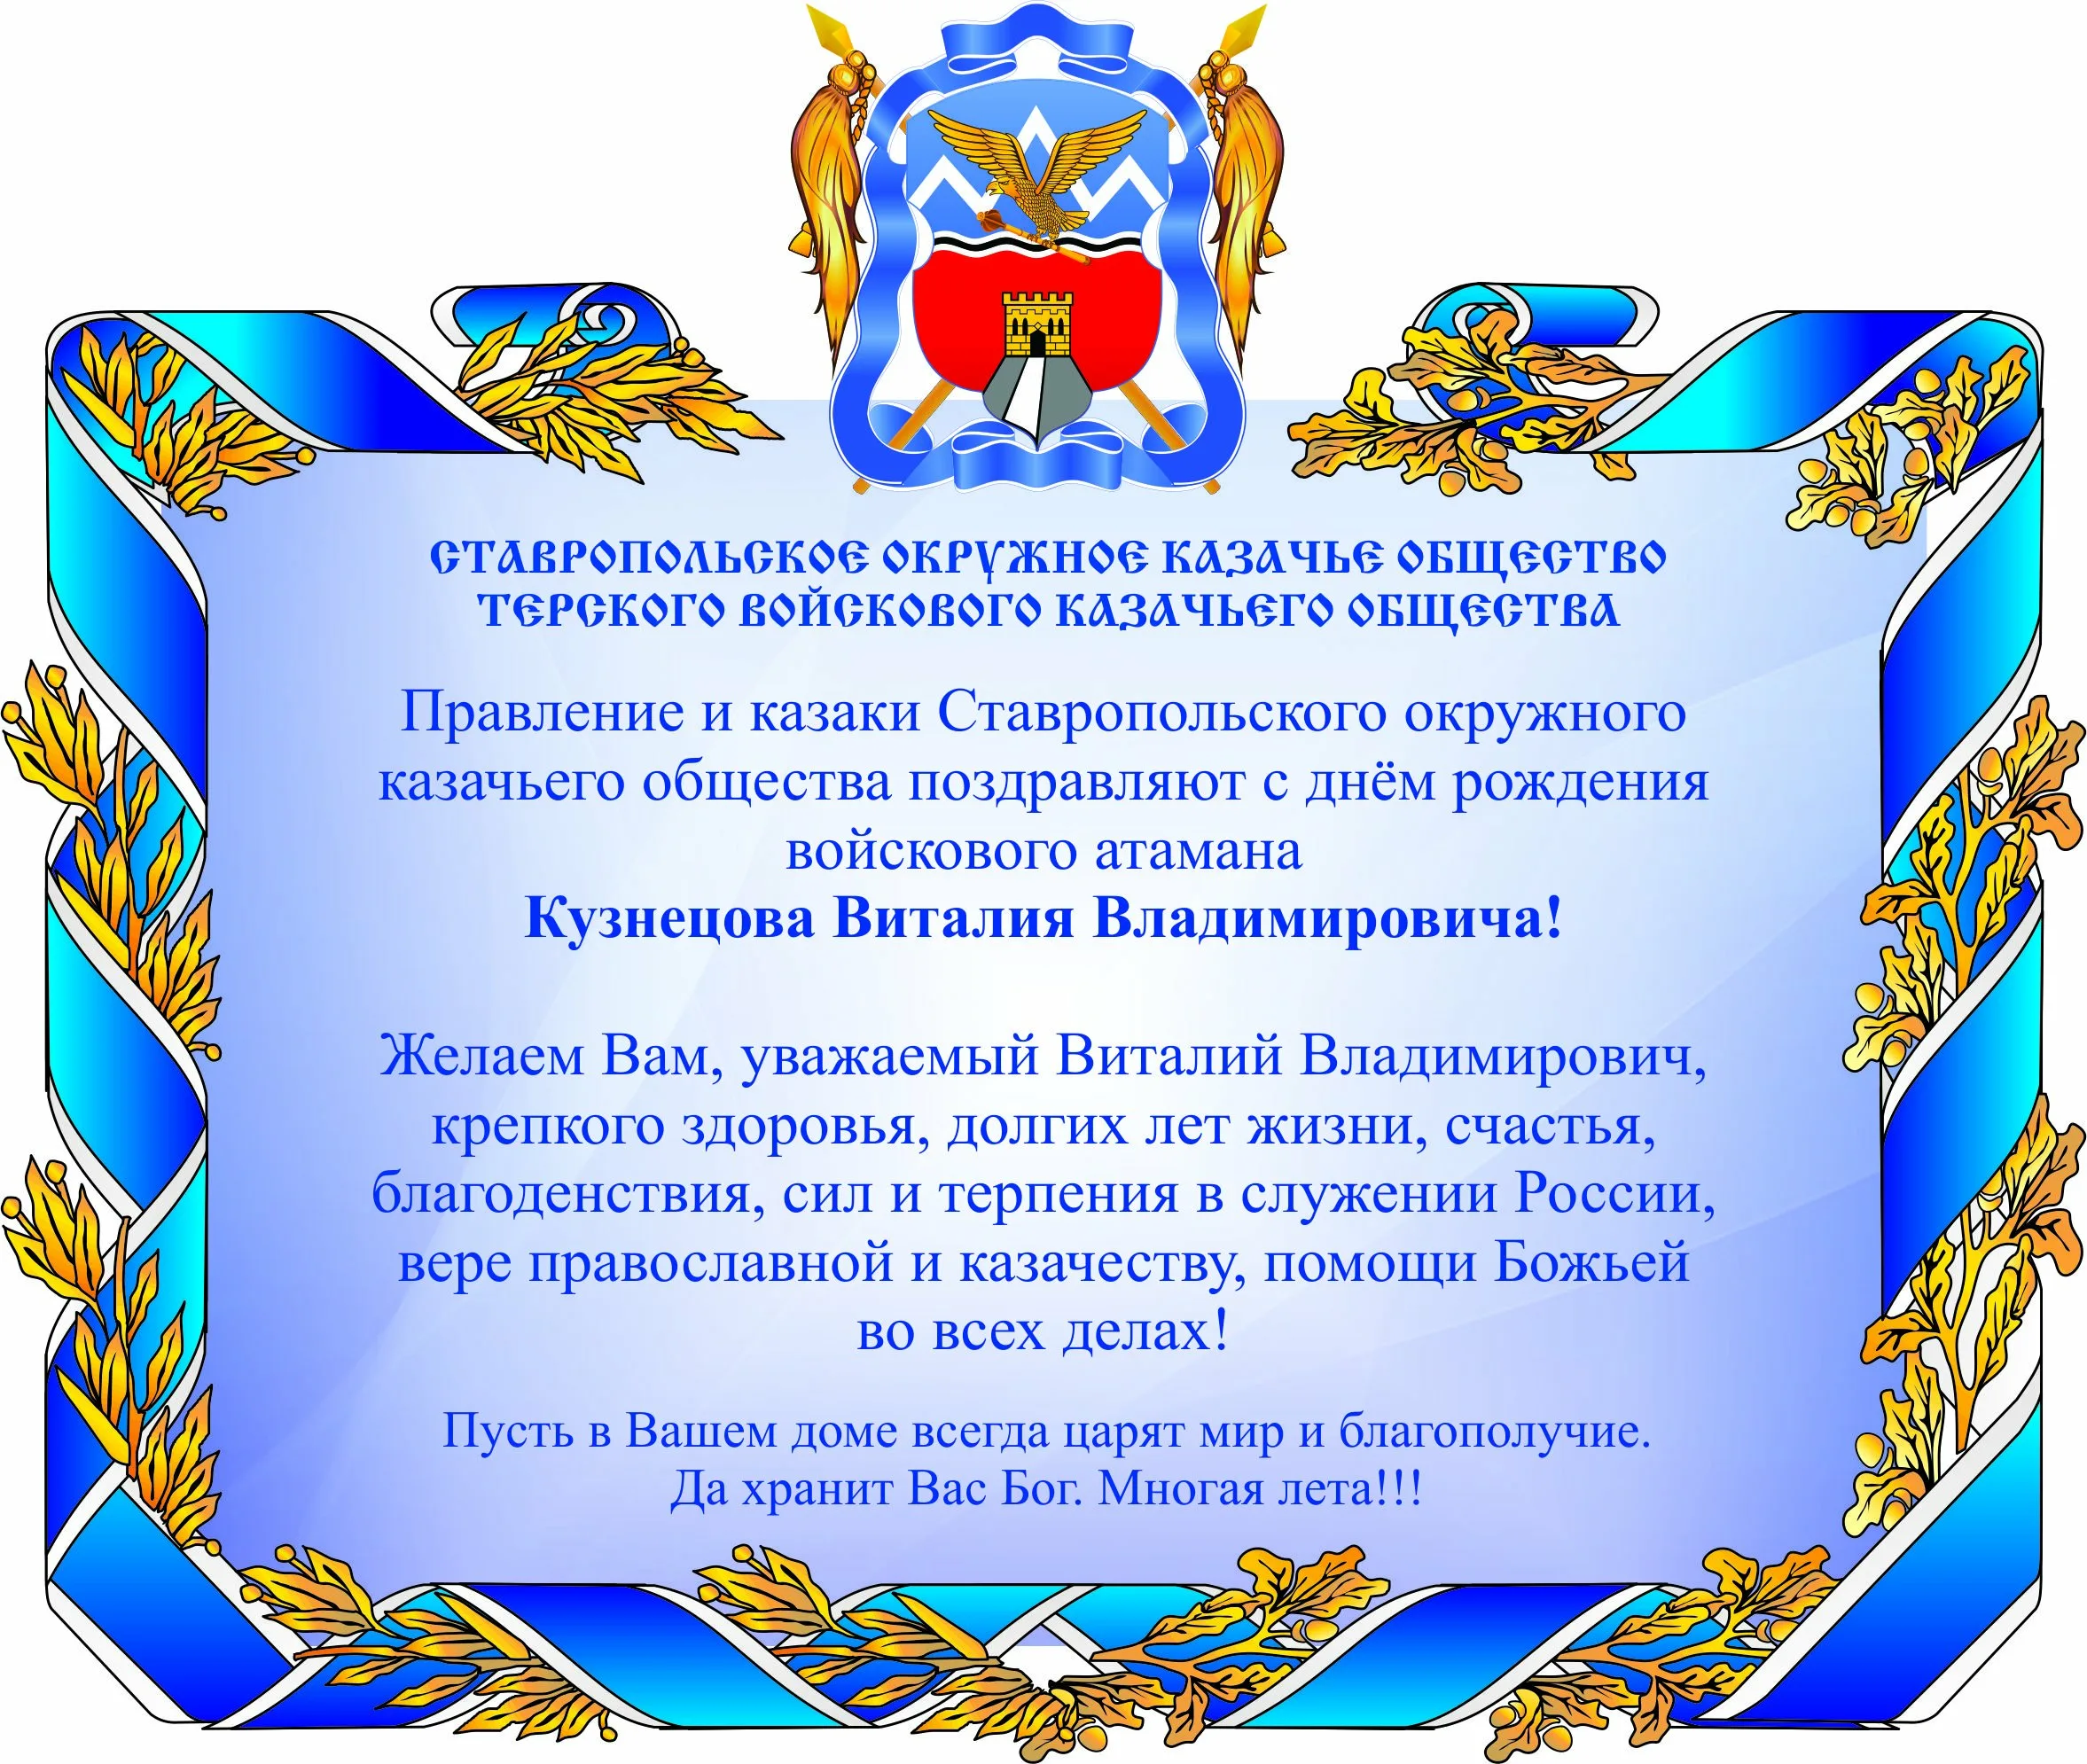 Сообщество поздравления. Поздравление атамана с днем рождения. Поздравление казаку. Поздравить казака с днем рождения. Поздравление казачьими.